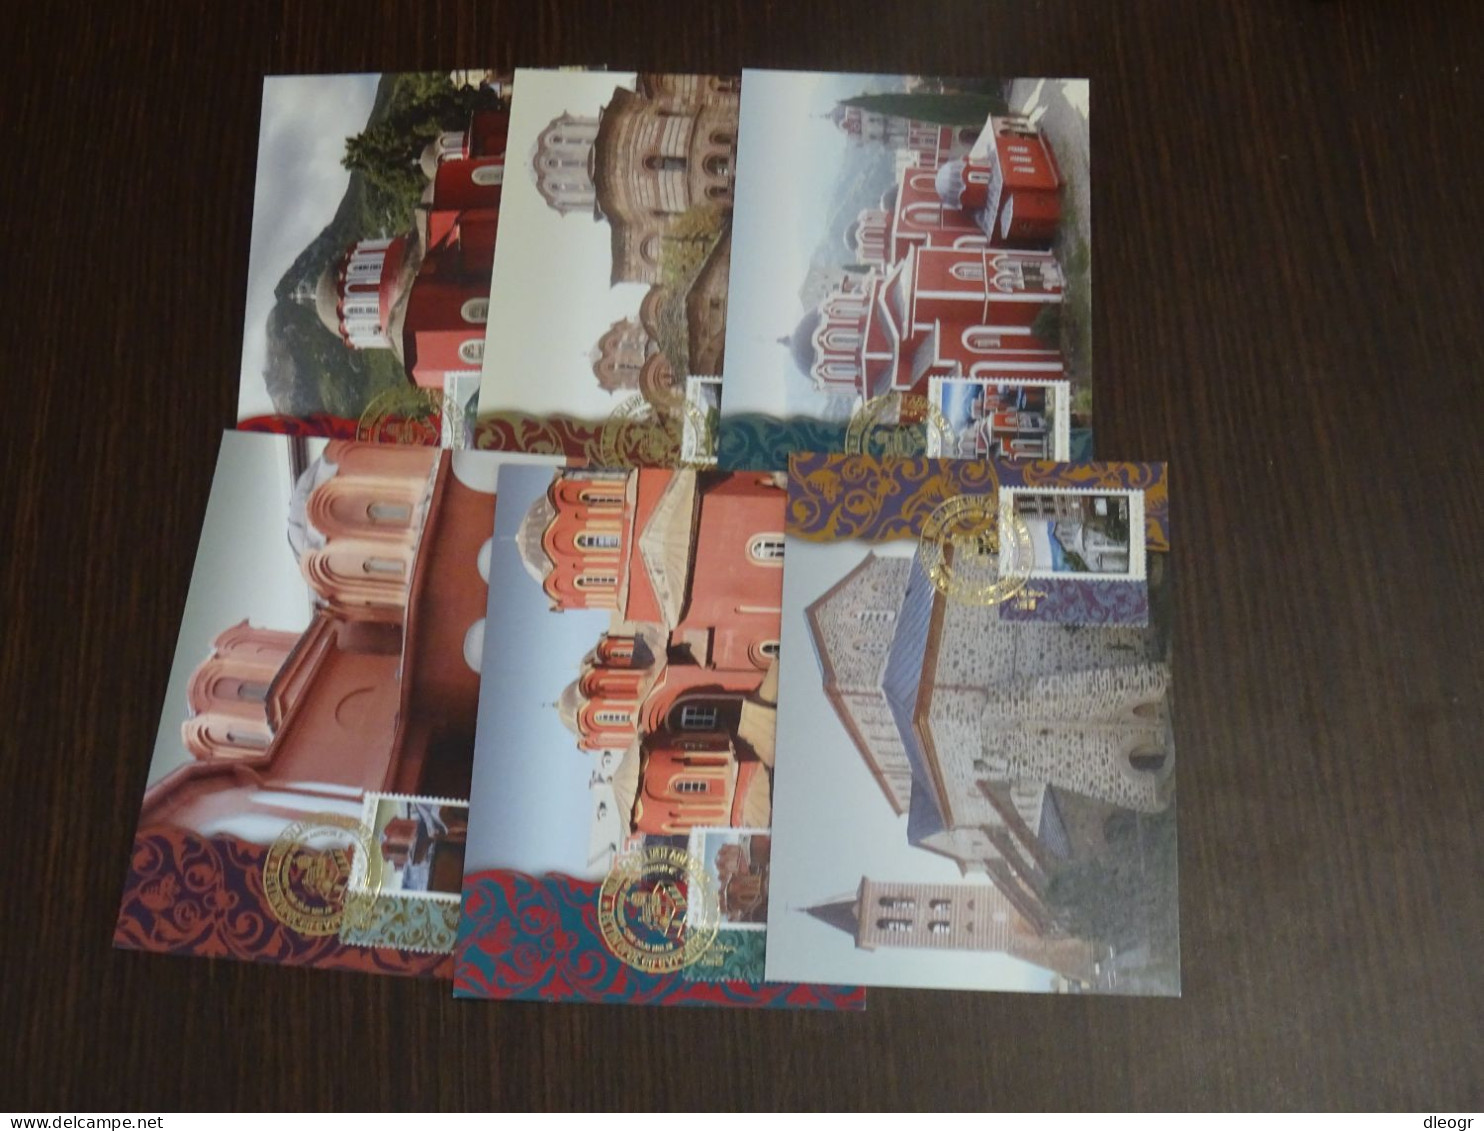 Greece Mount Athos 2012 Katholika Of The Holy Monasteries I Maximum Card Set XF. - Tarjetas – Máximo